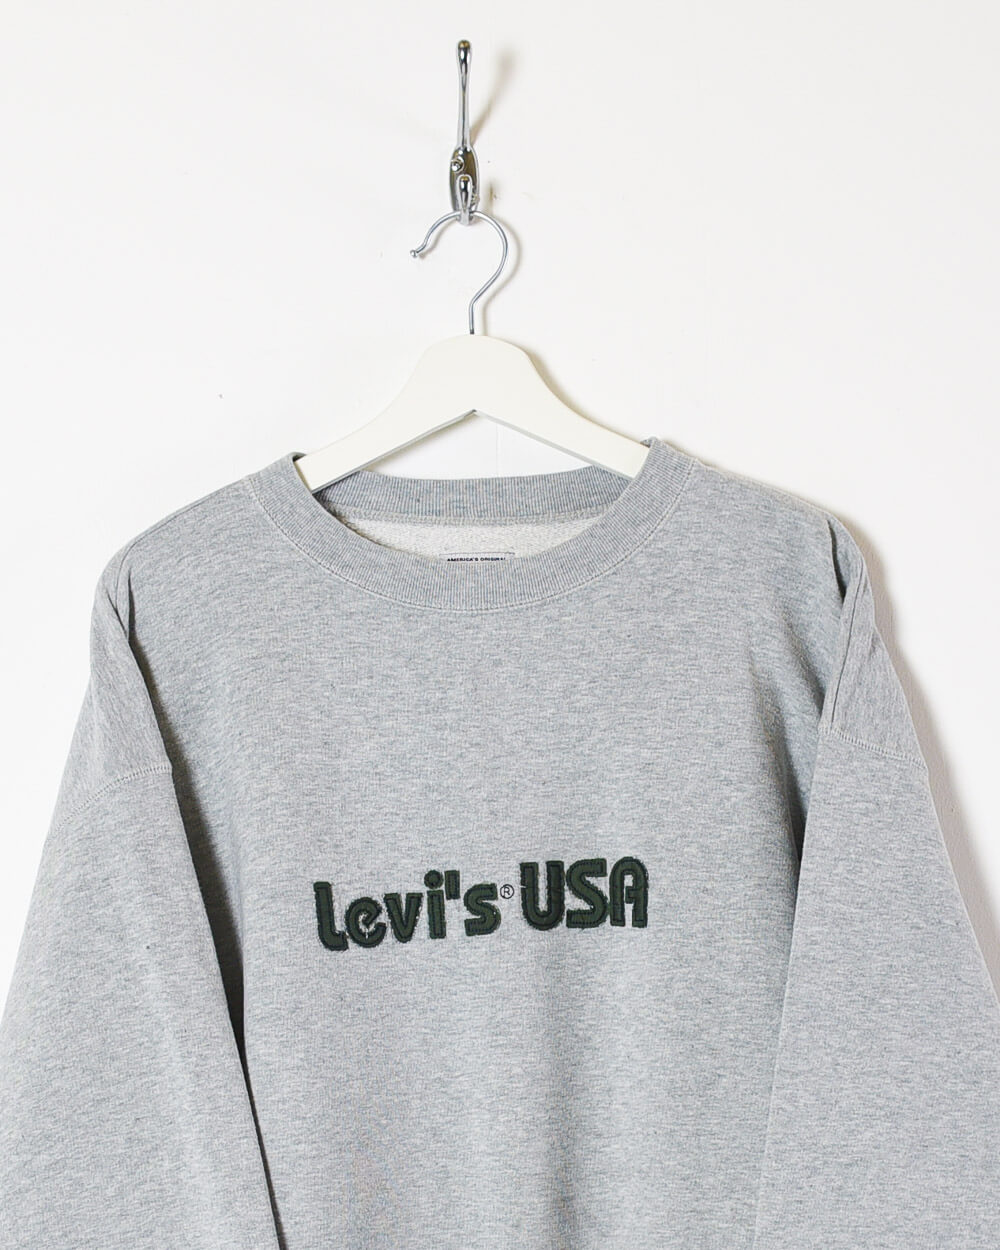 Stone Levi's USA Sweatshirt - Large